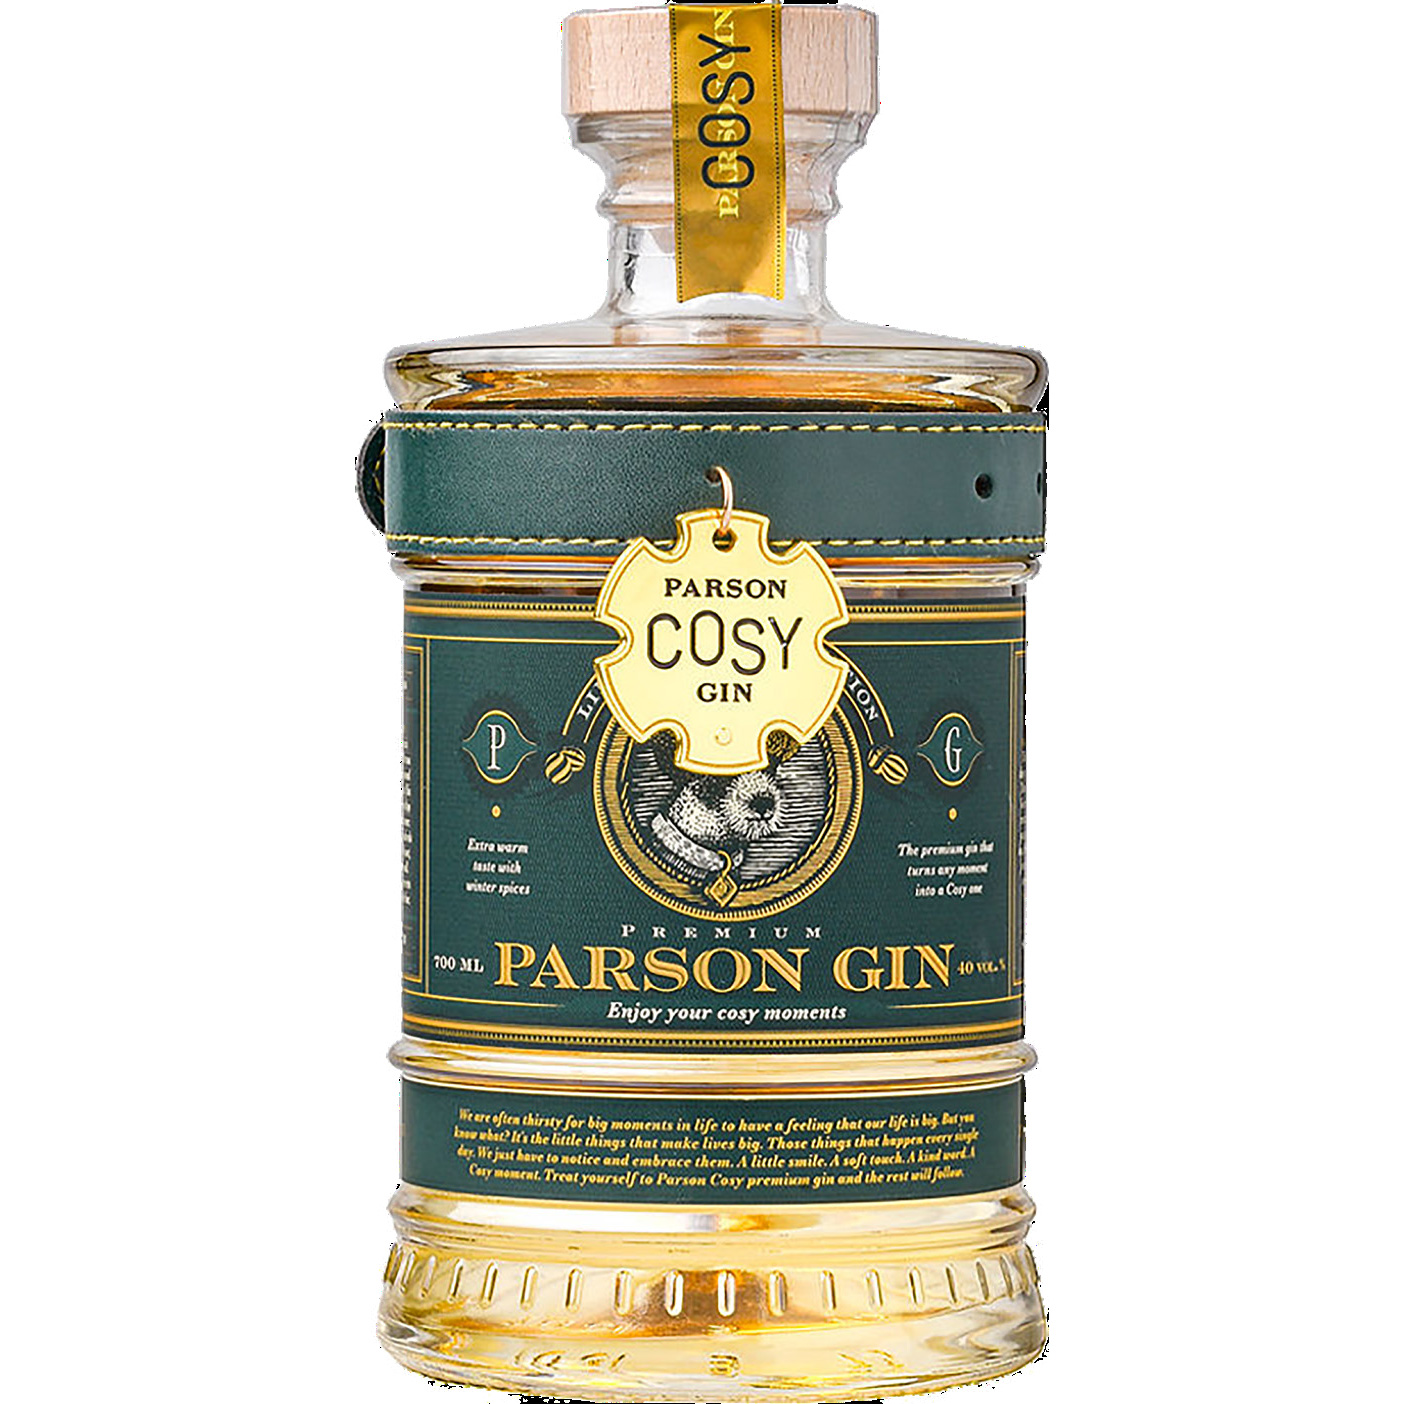 Brug Parson Cosy Premium Gin til en forbedret oplevelse